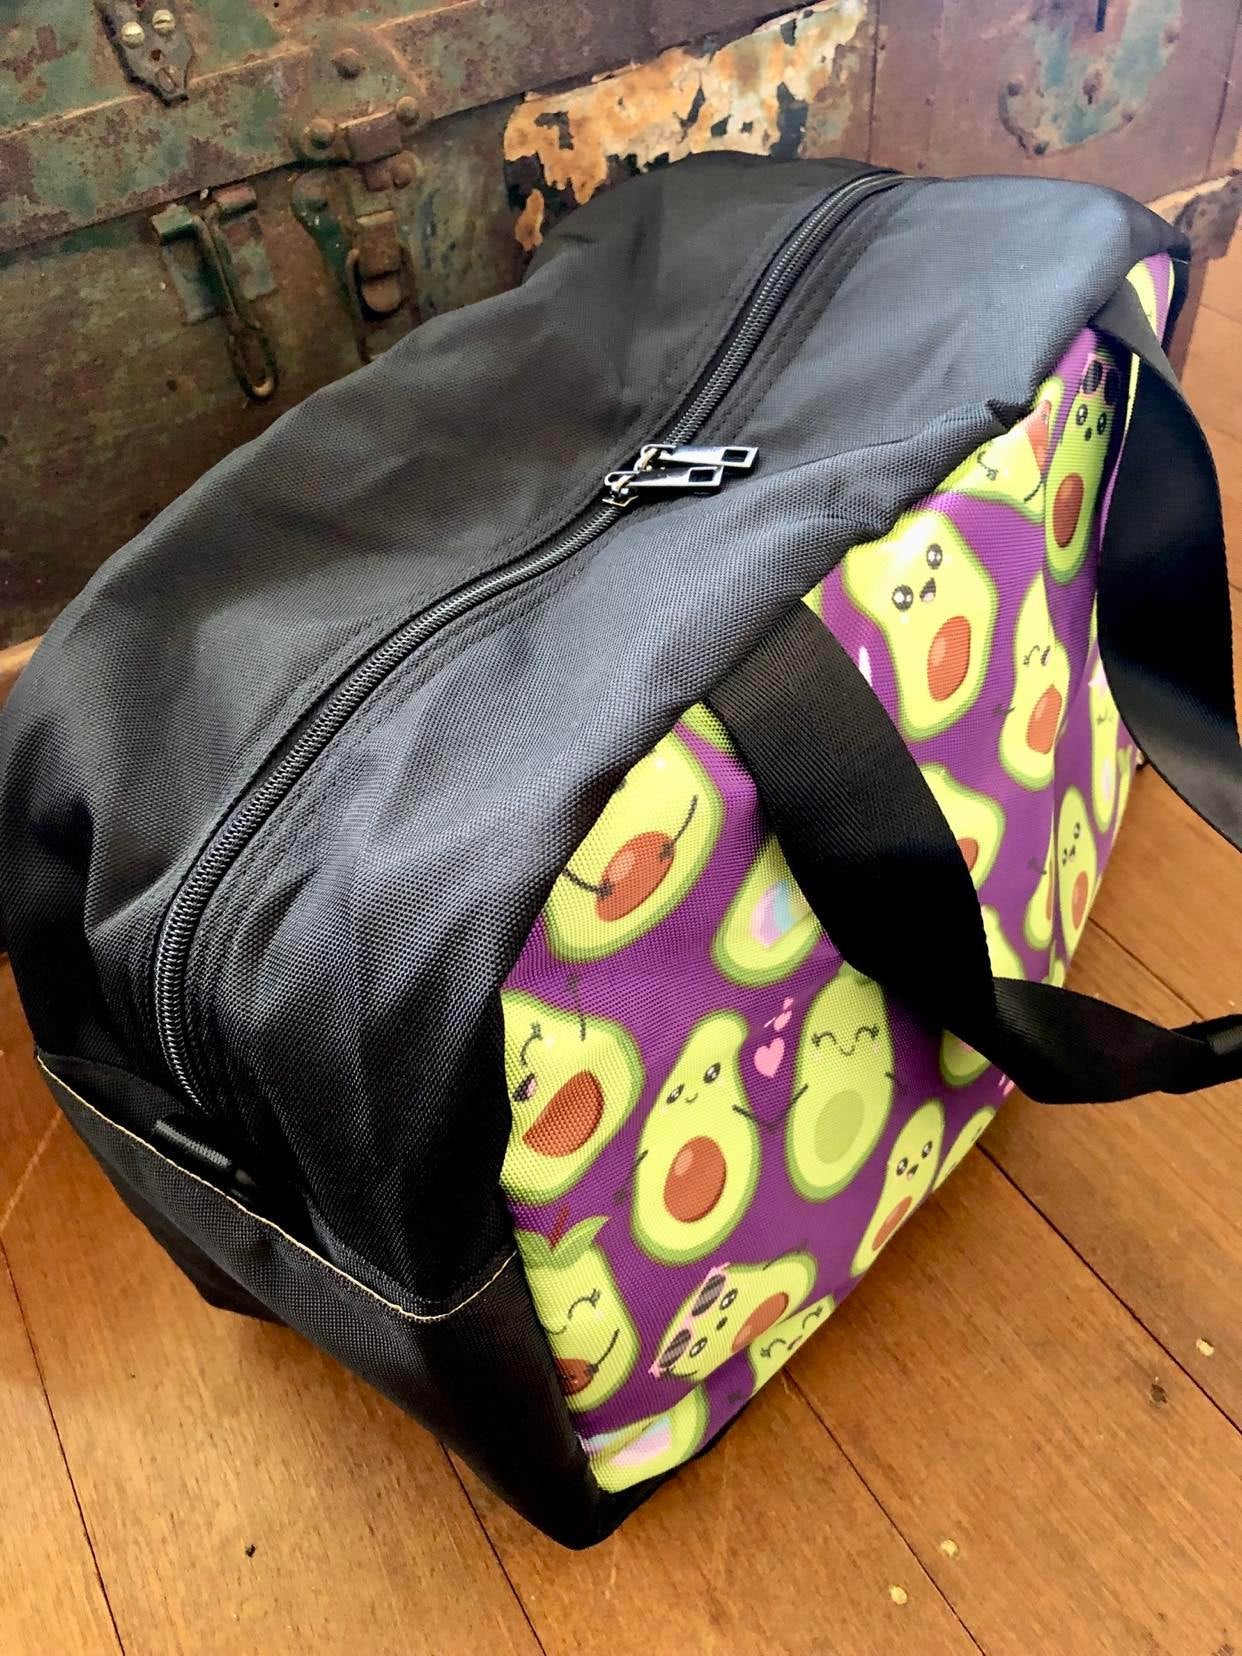 Avocado - Travel Bag